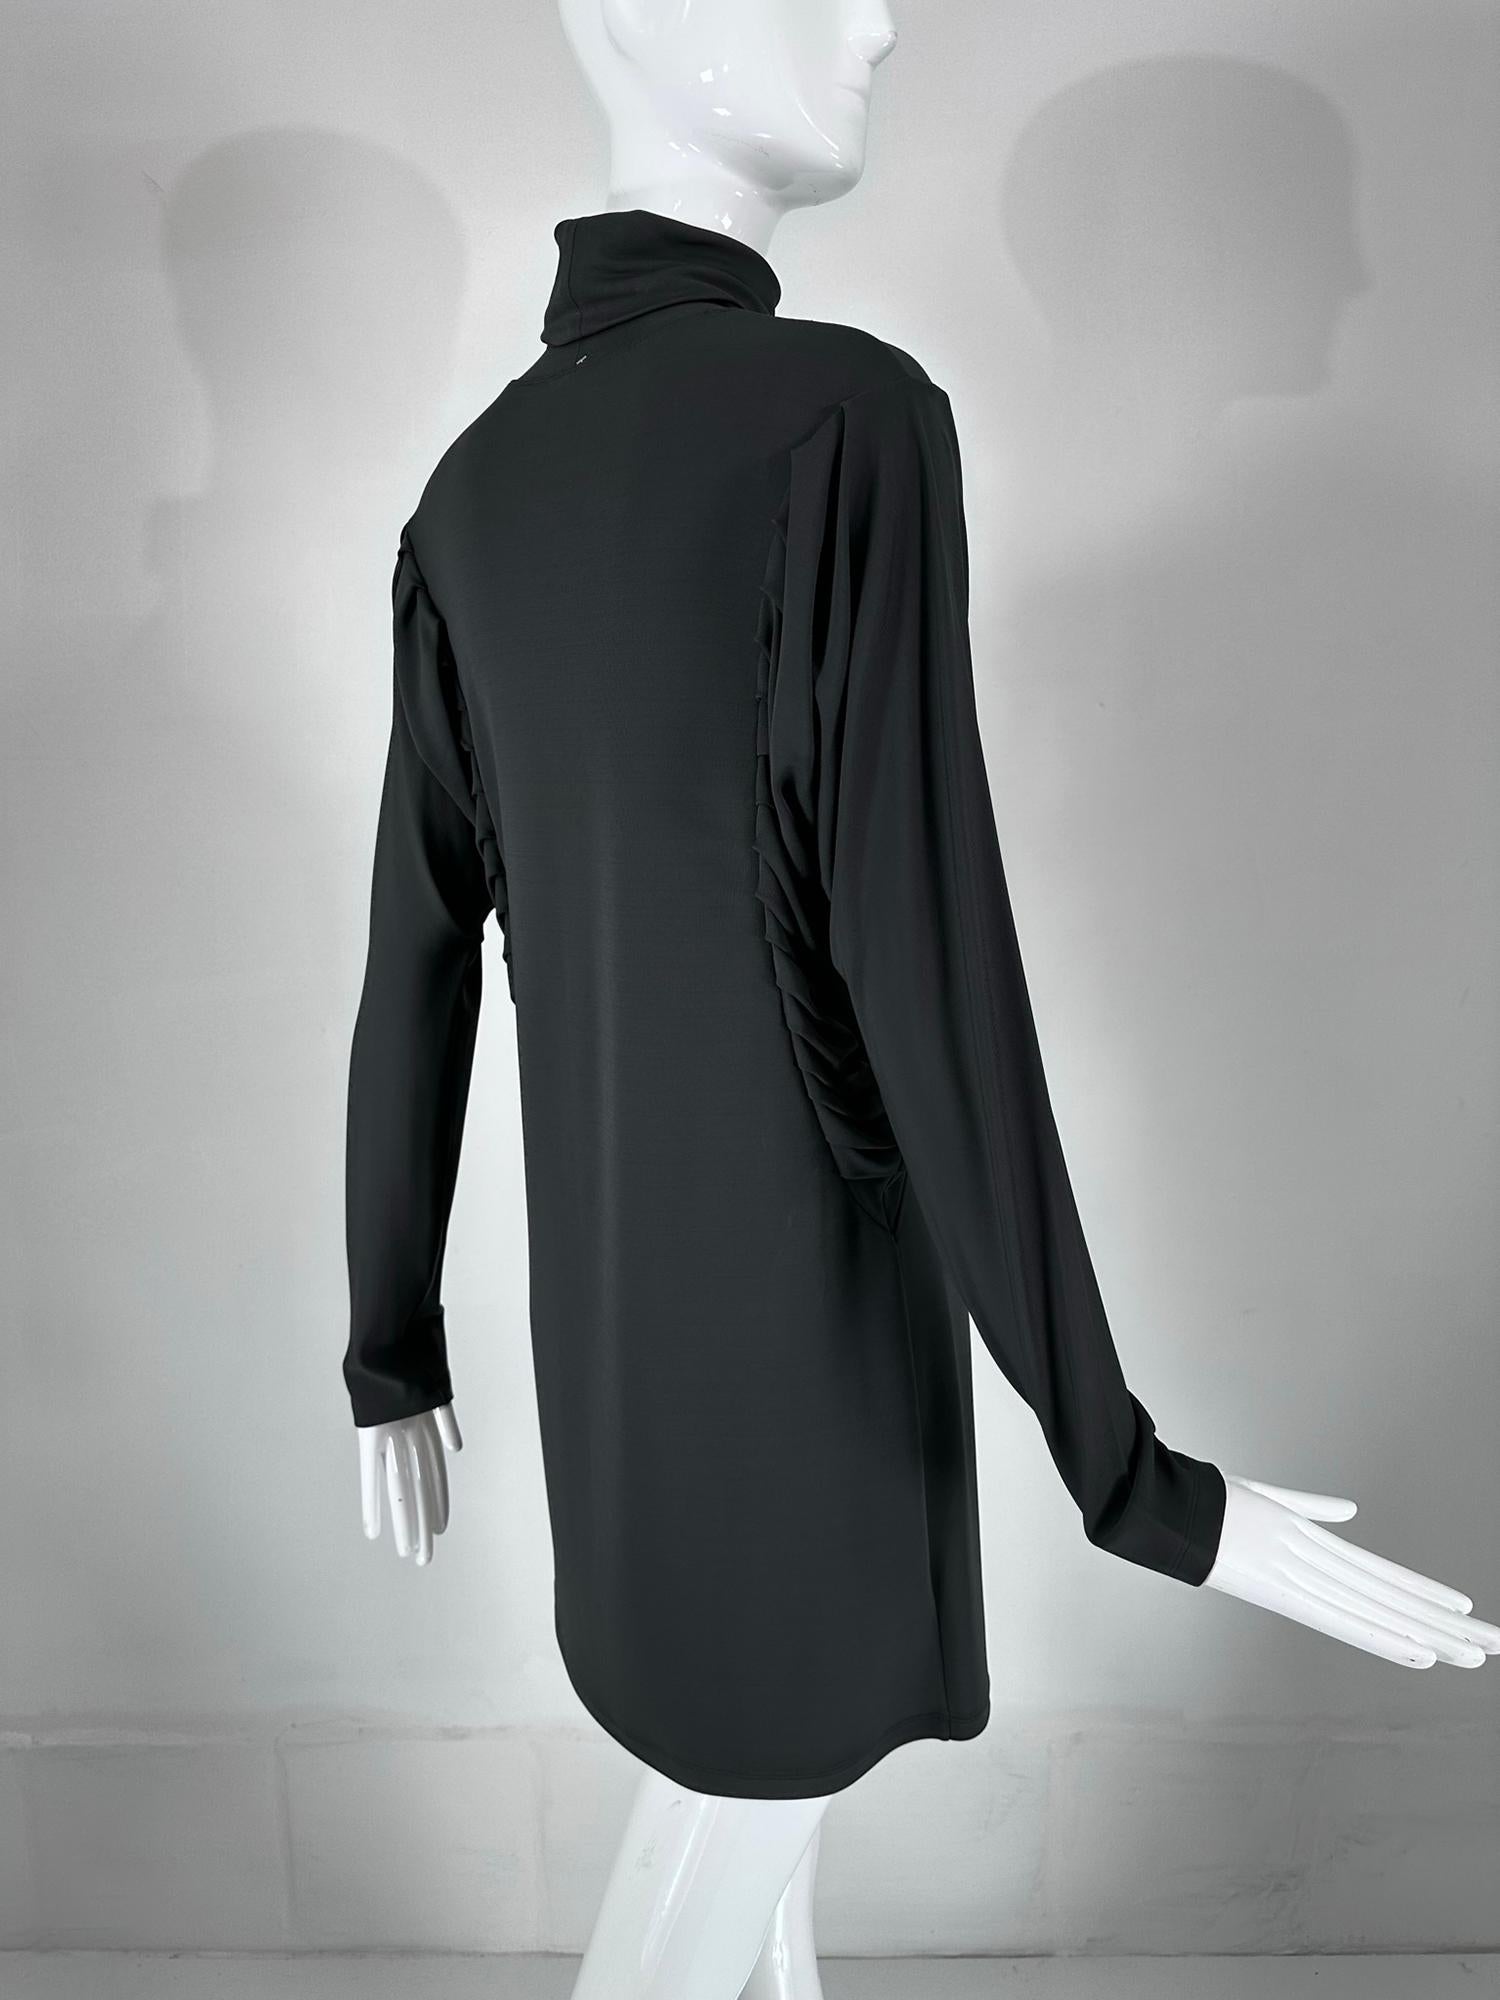 Fendi Silky Black Jersey Pleated Bat Wing Turtle Neck Dress 40 For Sale 3